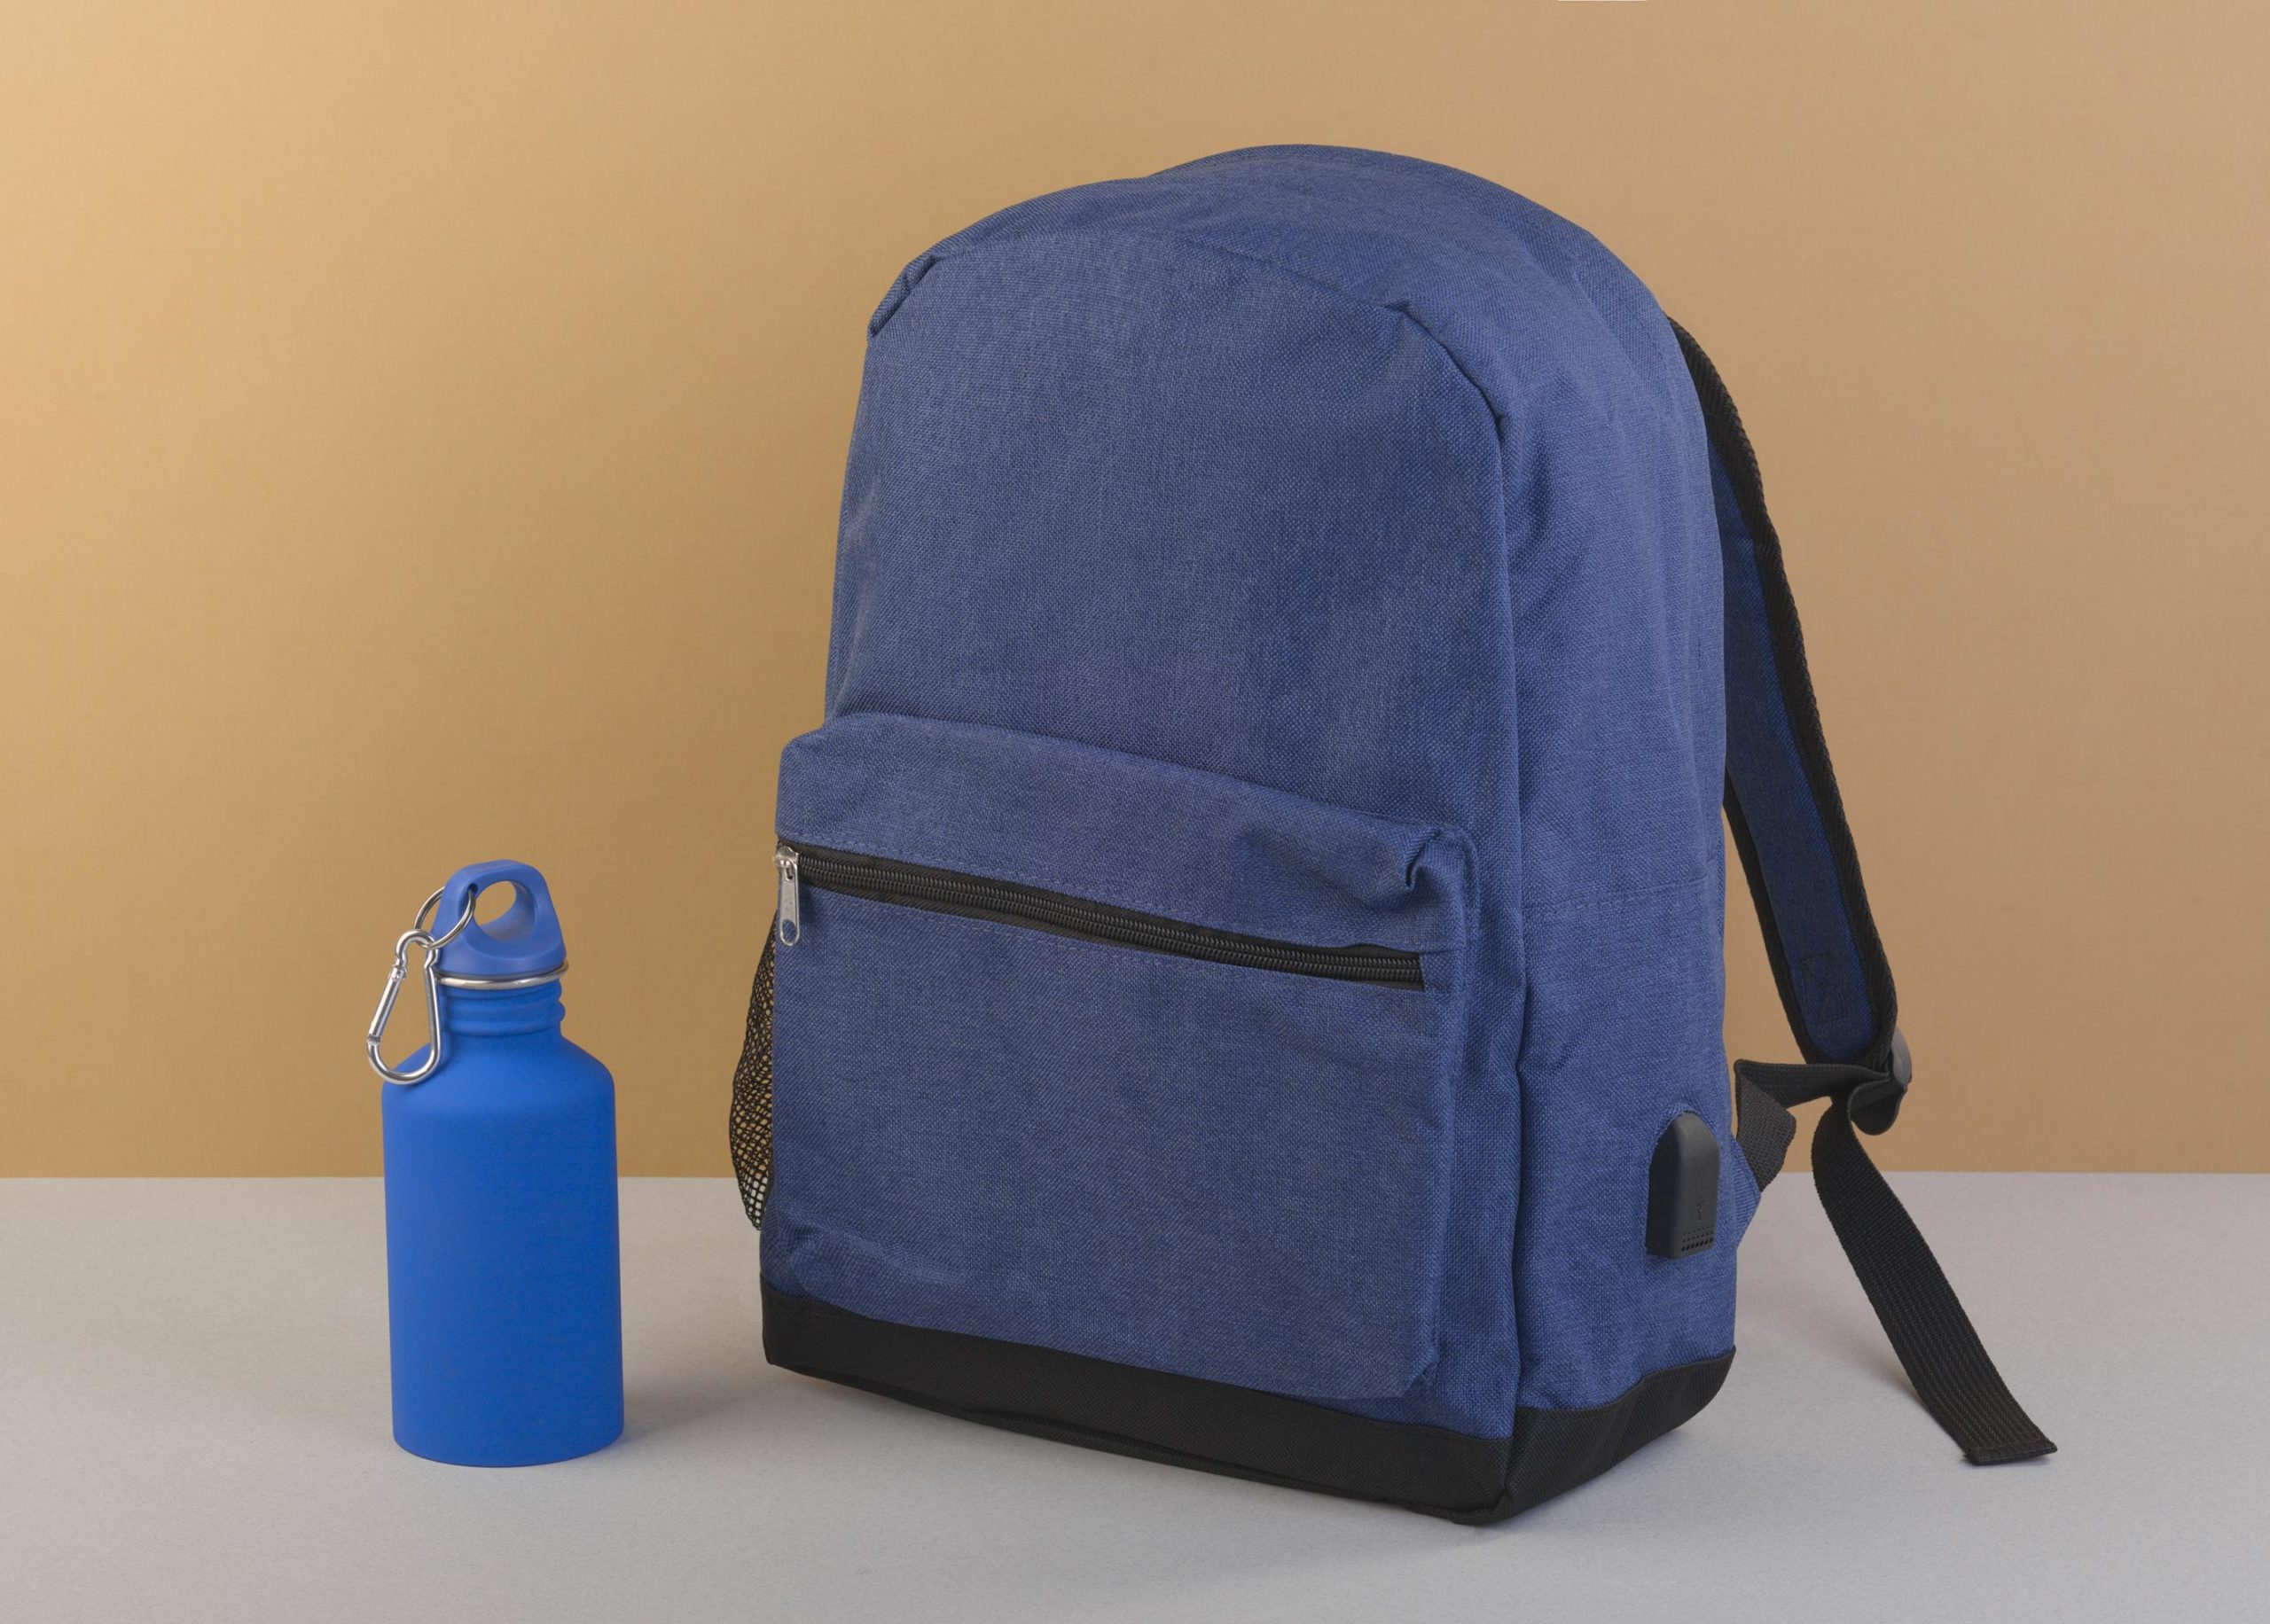 Рюкзак "Urban", цвет синий, фото 1